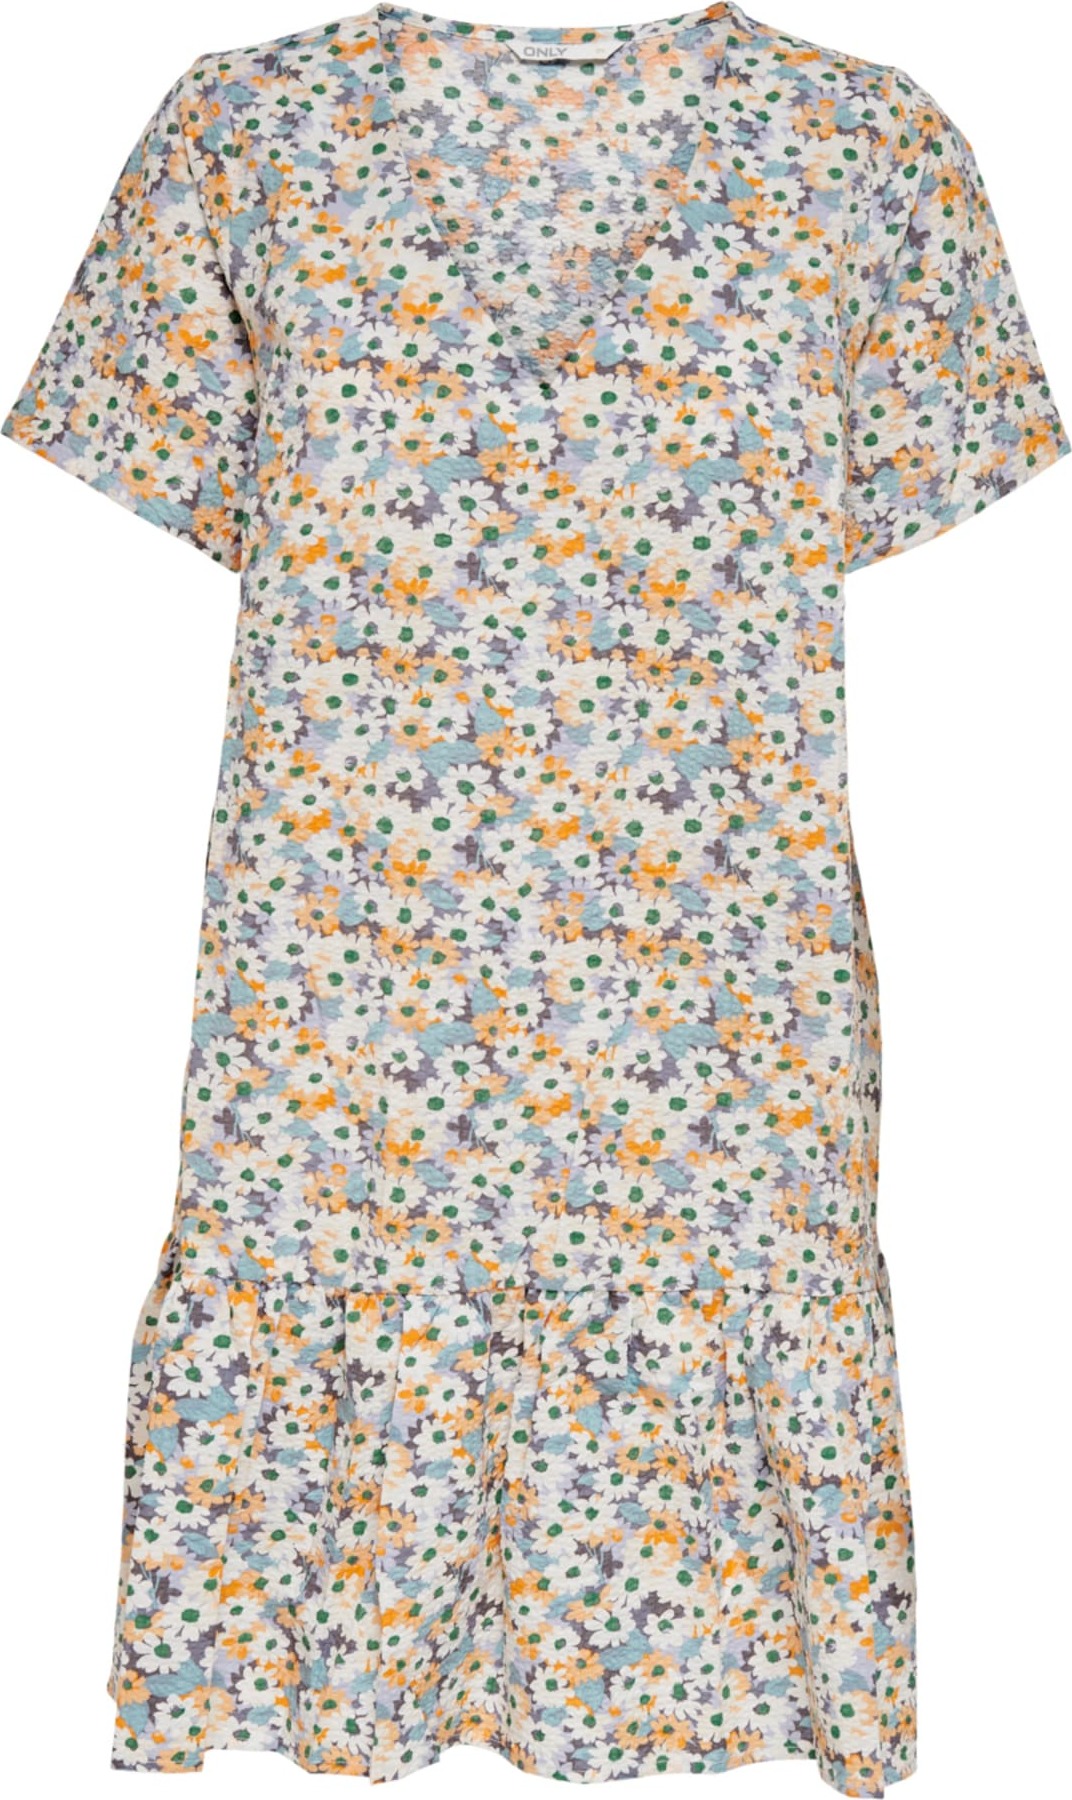 ONLY Letní šaty 'Tammie' bílá / mix barev